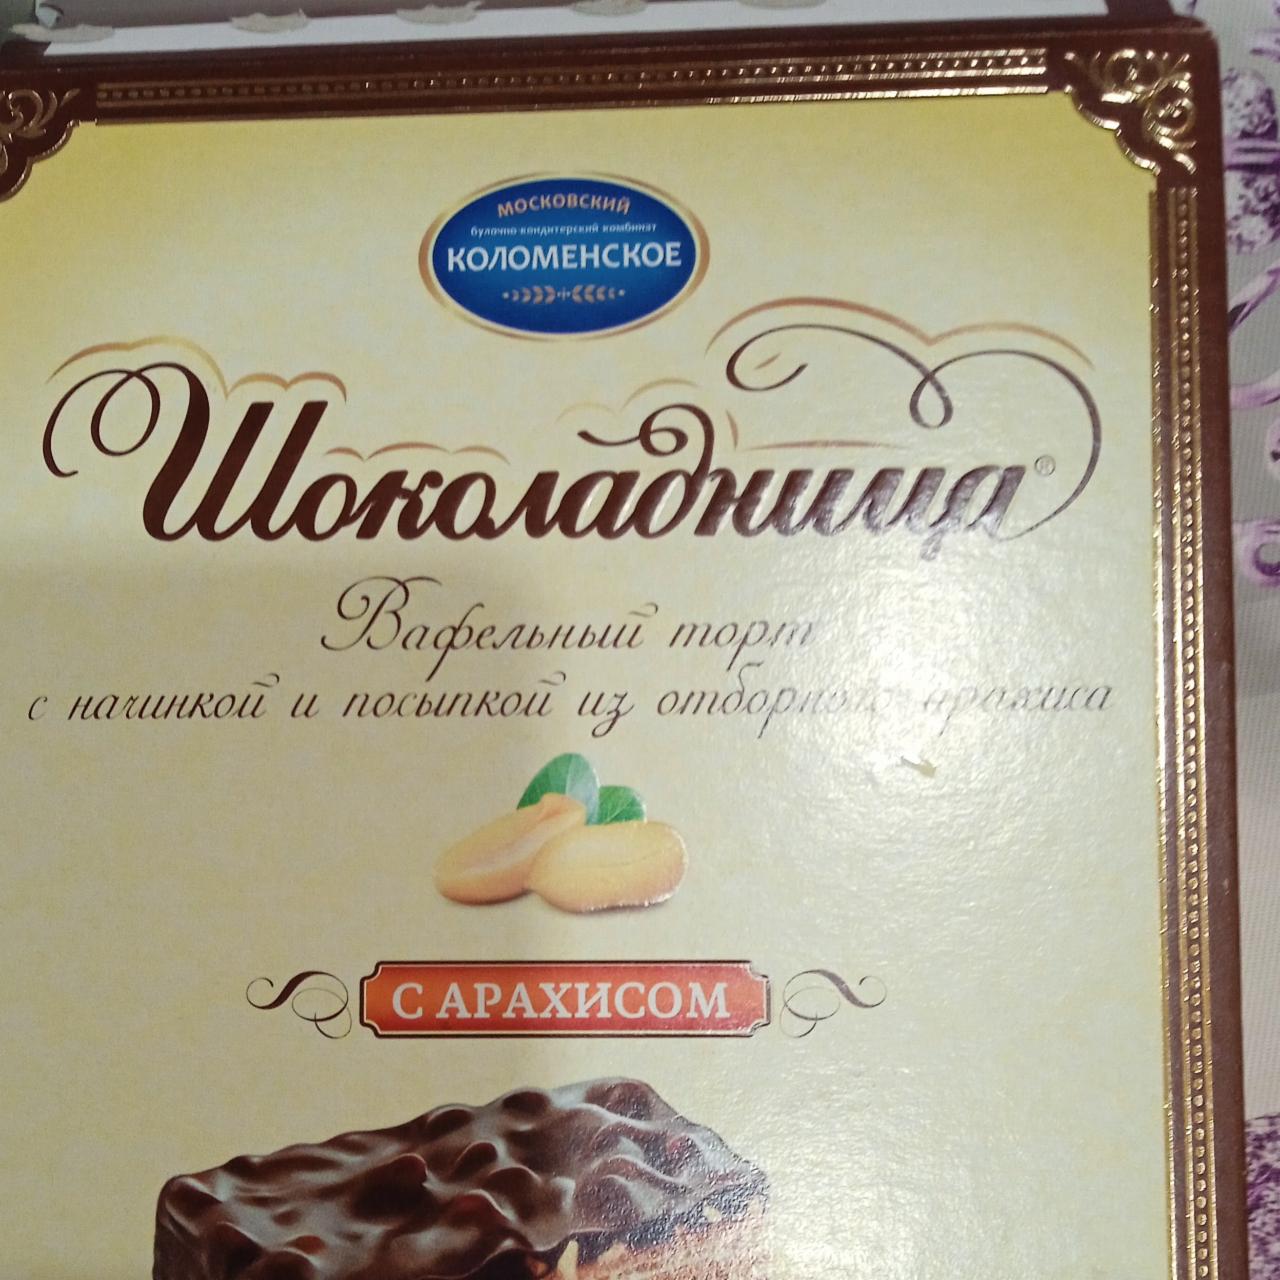 Фото - Вафельный торт с начинкой и посыпкой из отборного арахиса Шоколадница Коломенское